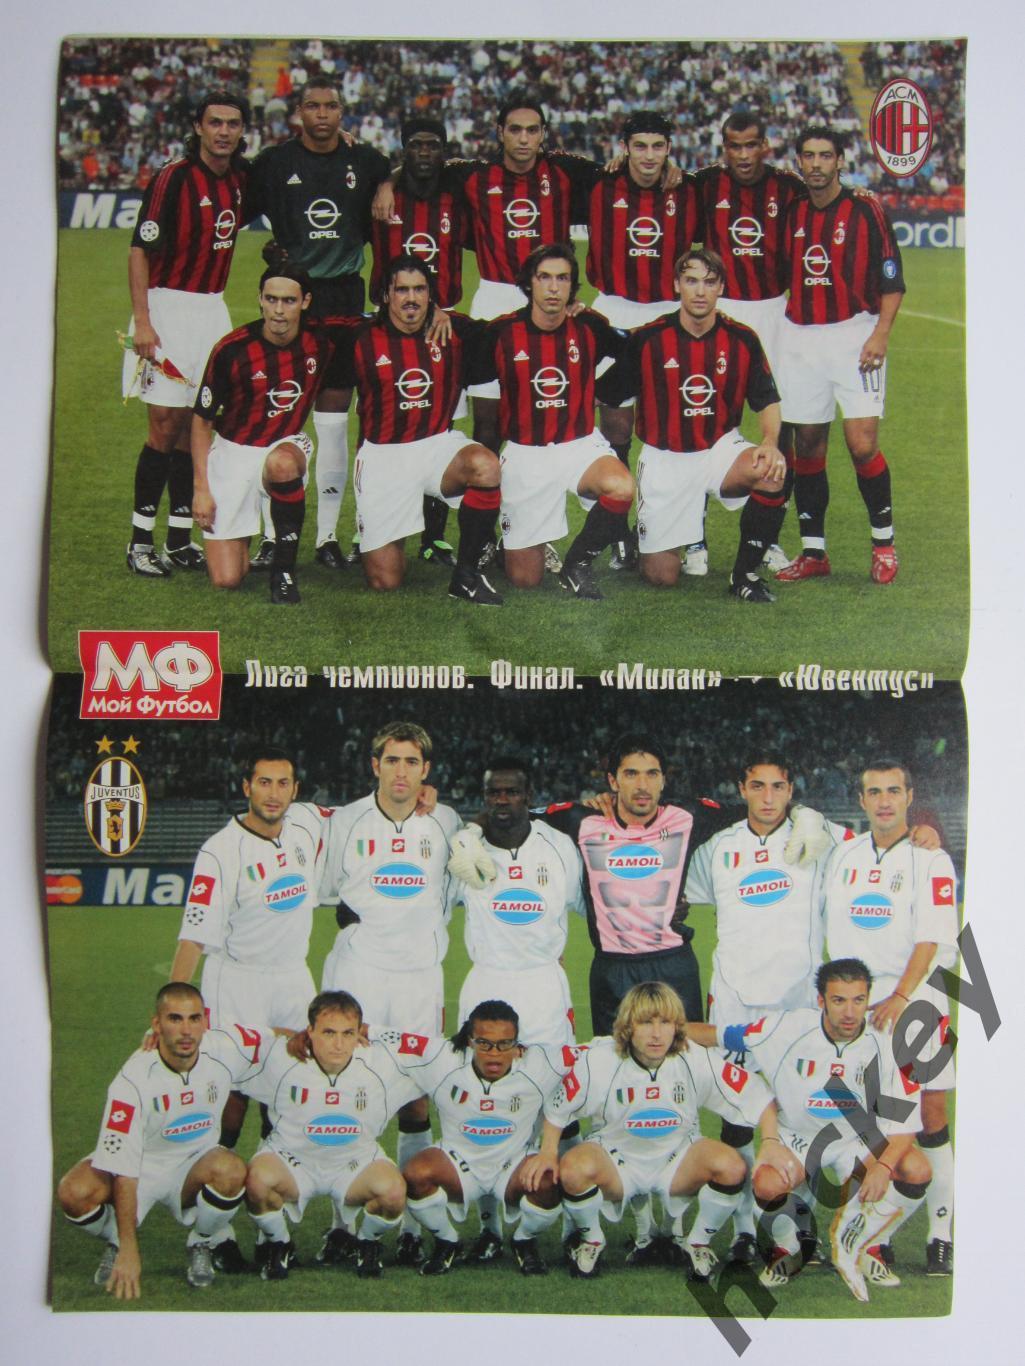 Мой футбол № 18 (187). (21 мая 2003 года). Постер Лига чемпионов. Милан-Ювентус 1